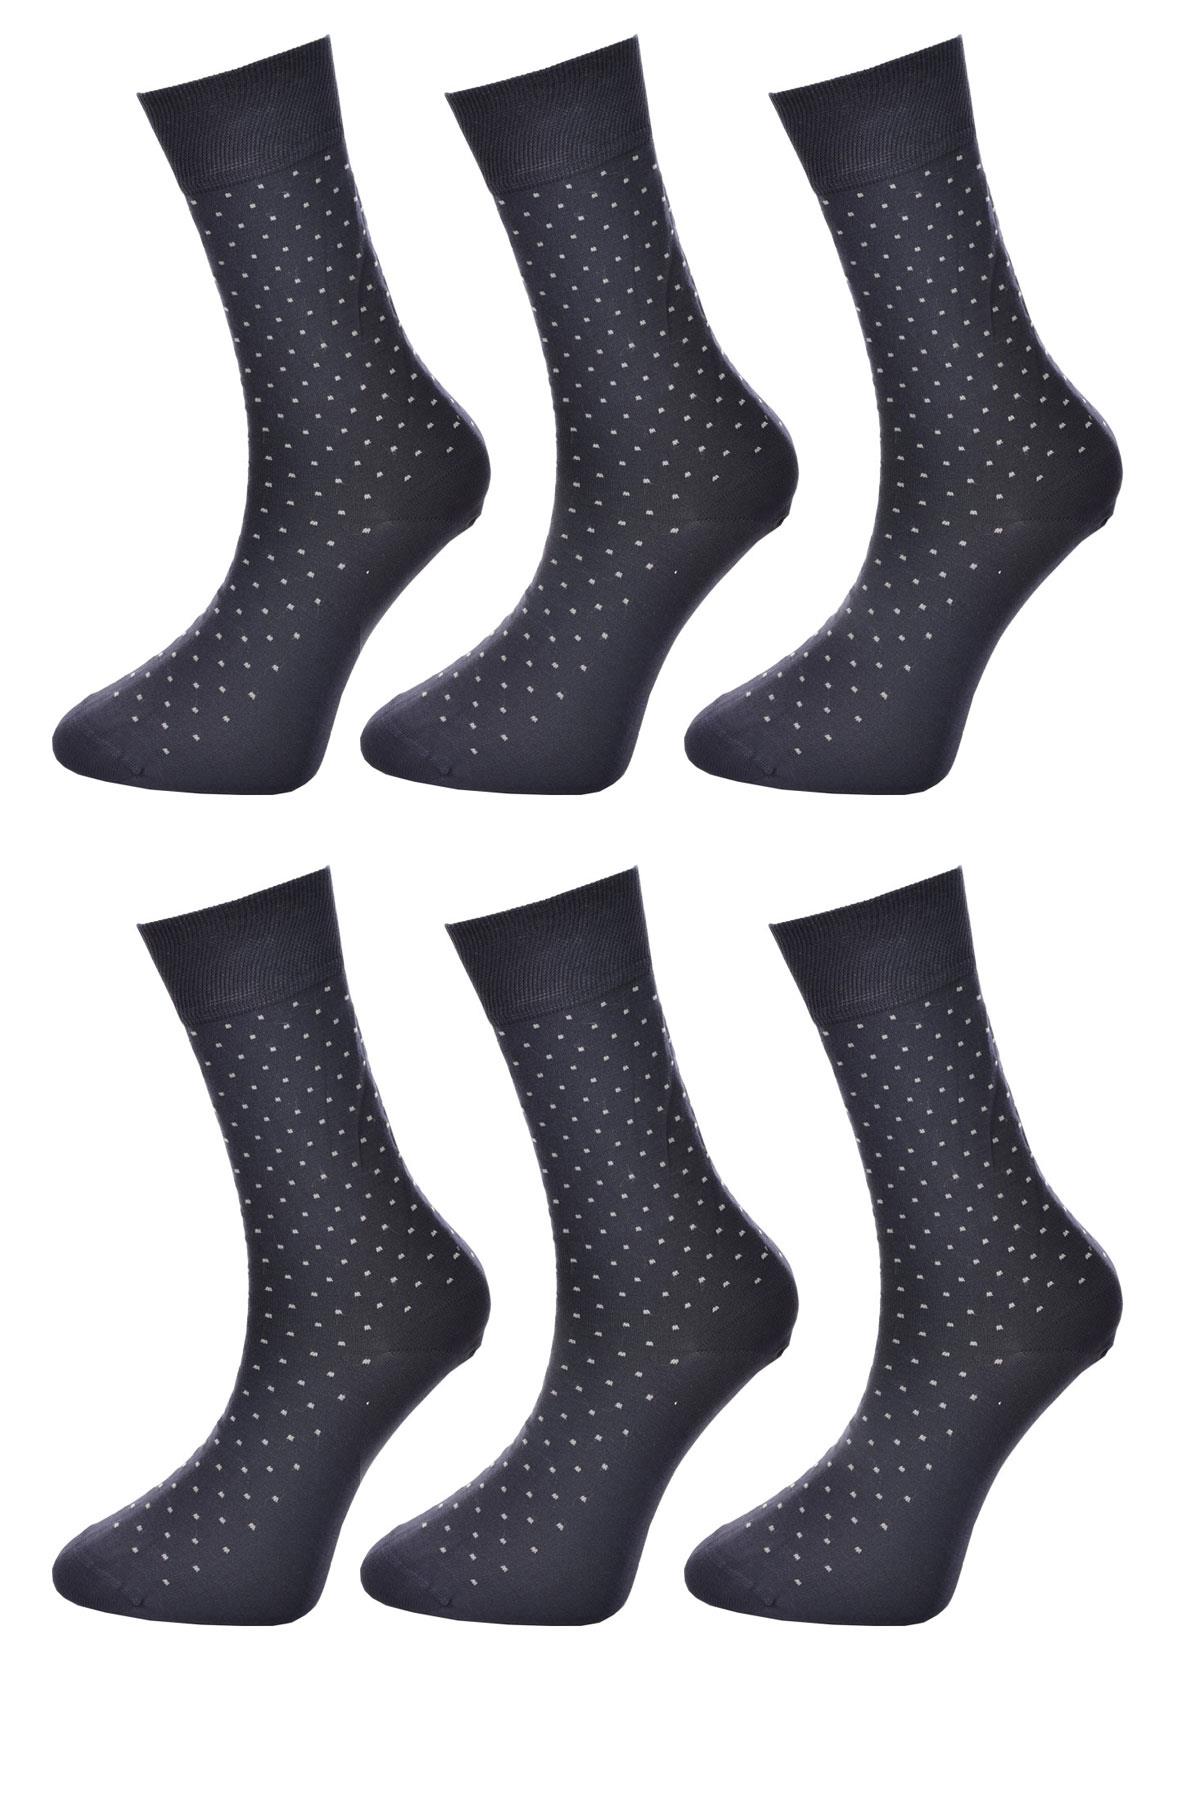 6 Çift Erkek Desenli Merserize Soket Çorap LACİVERT